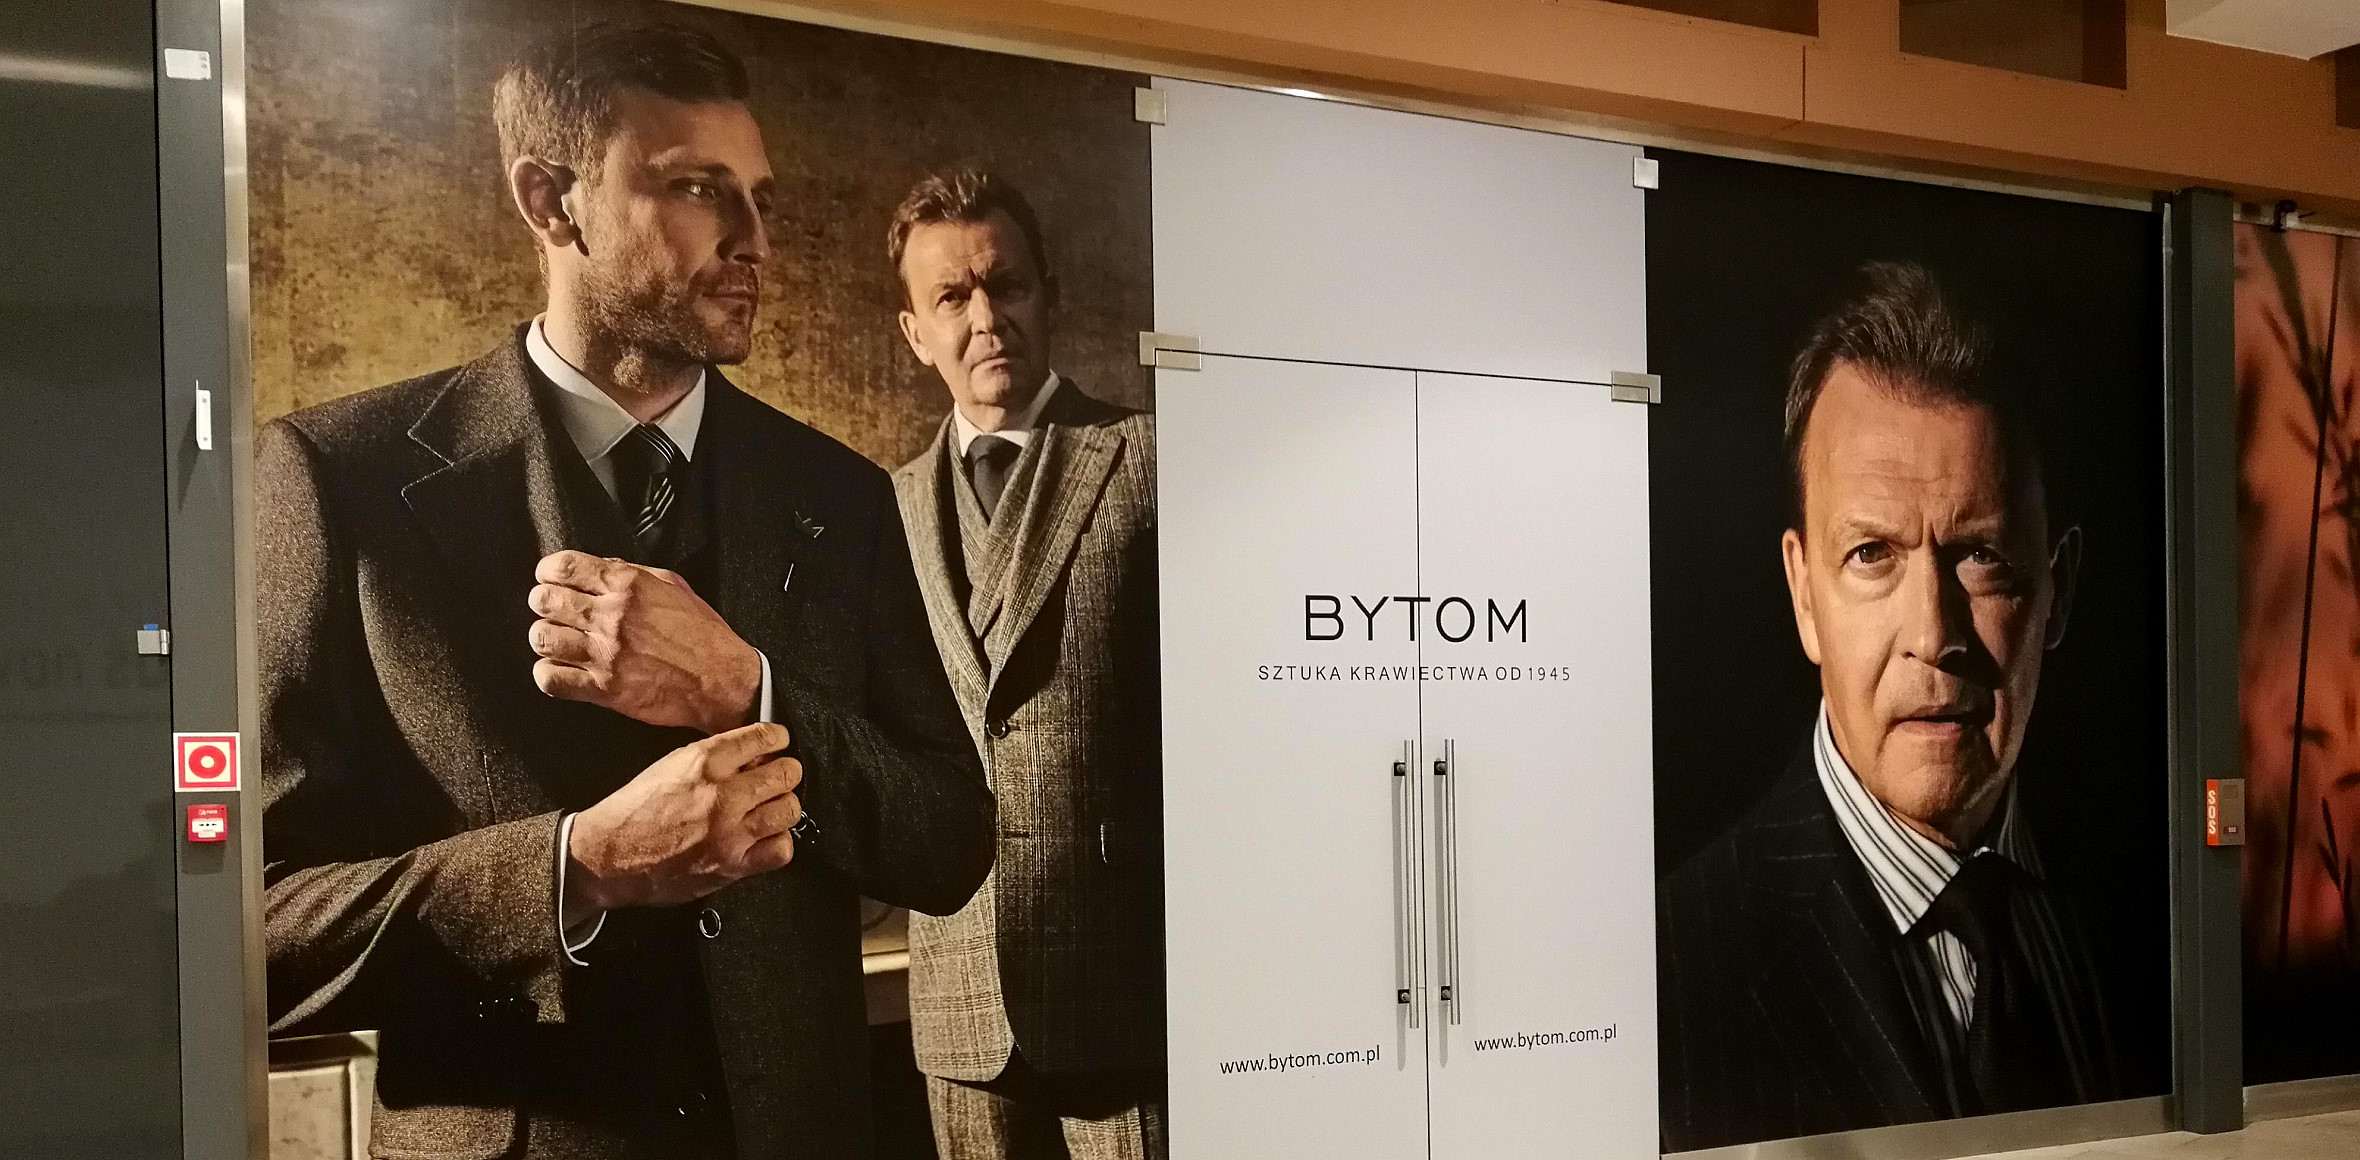 BYTOM - Bytom